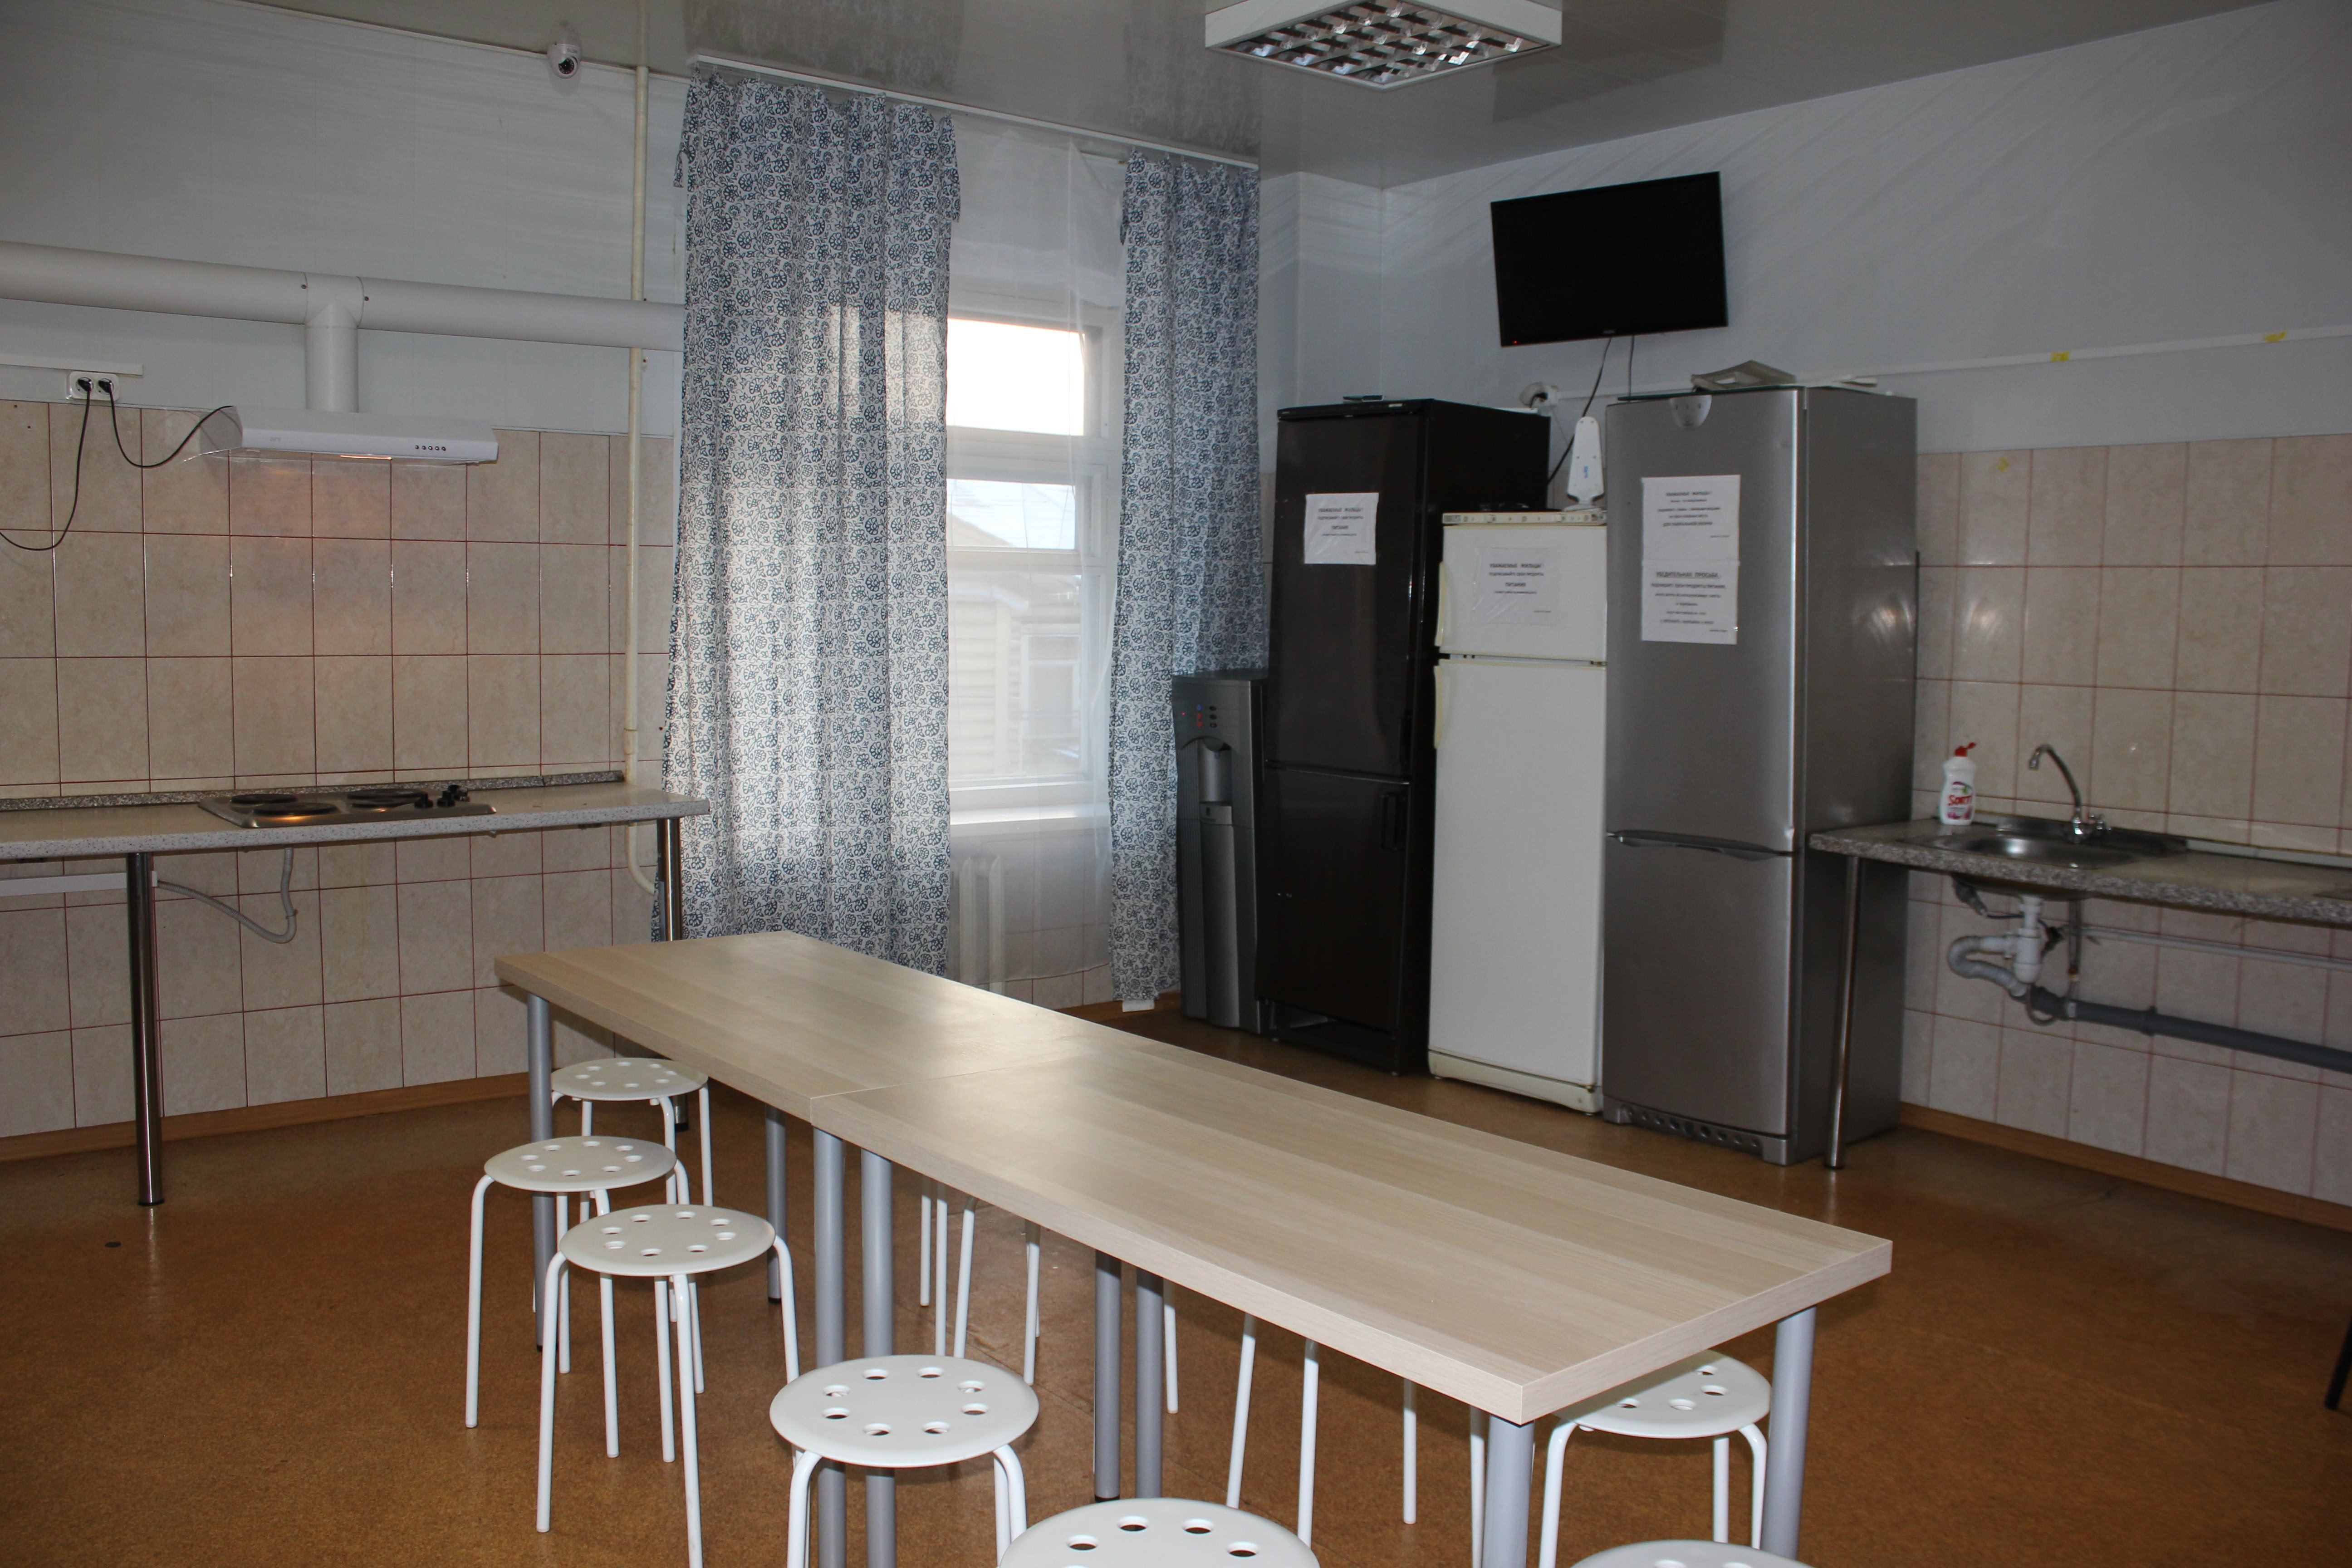 Круглый стол на кухне в общежитии. Мебель для общежитий. Кухня в общежитии фото. Общая кухня в общежитии